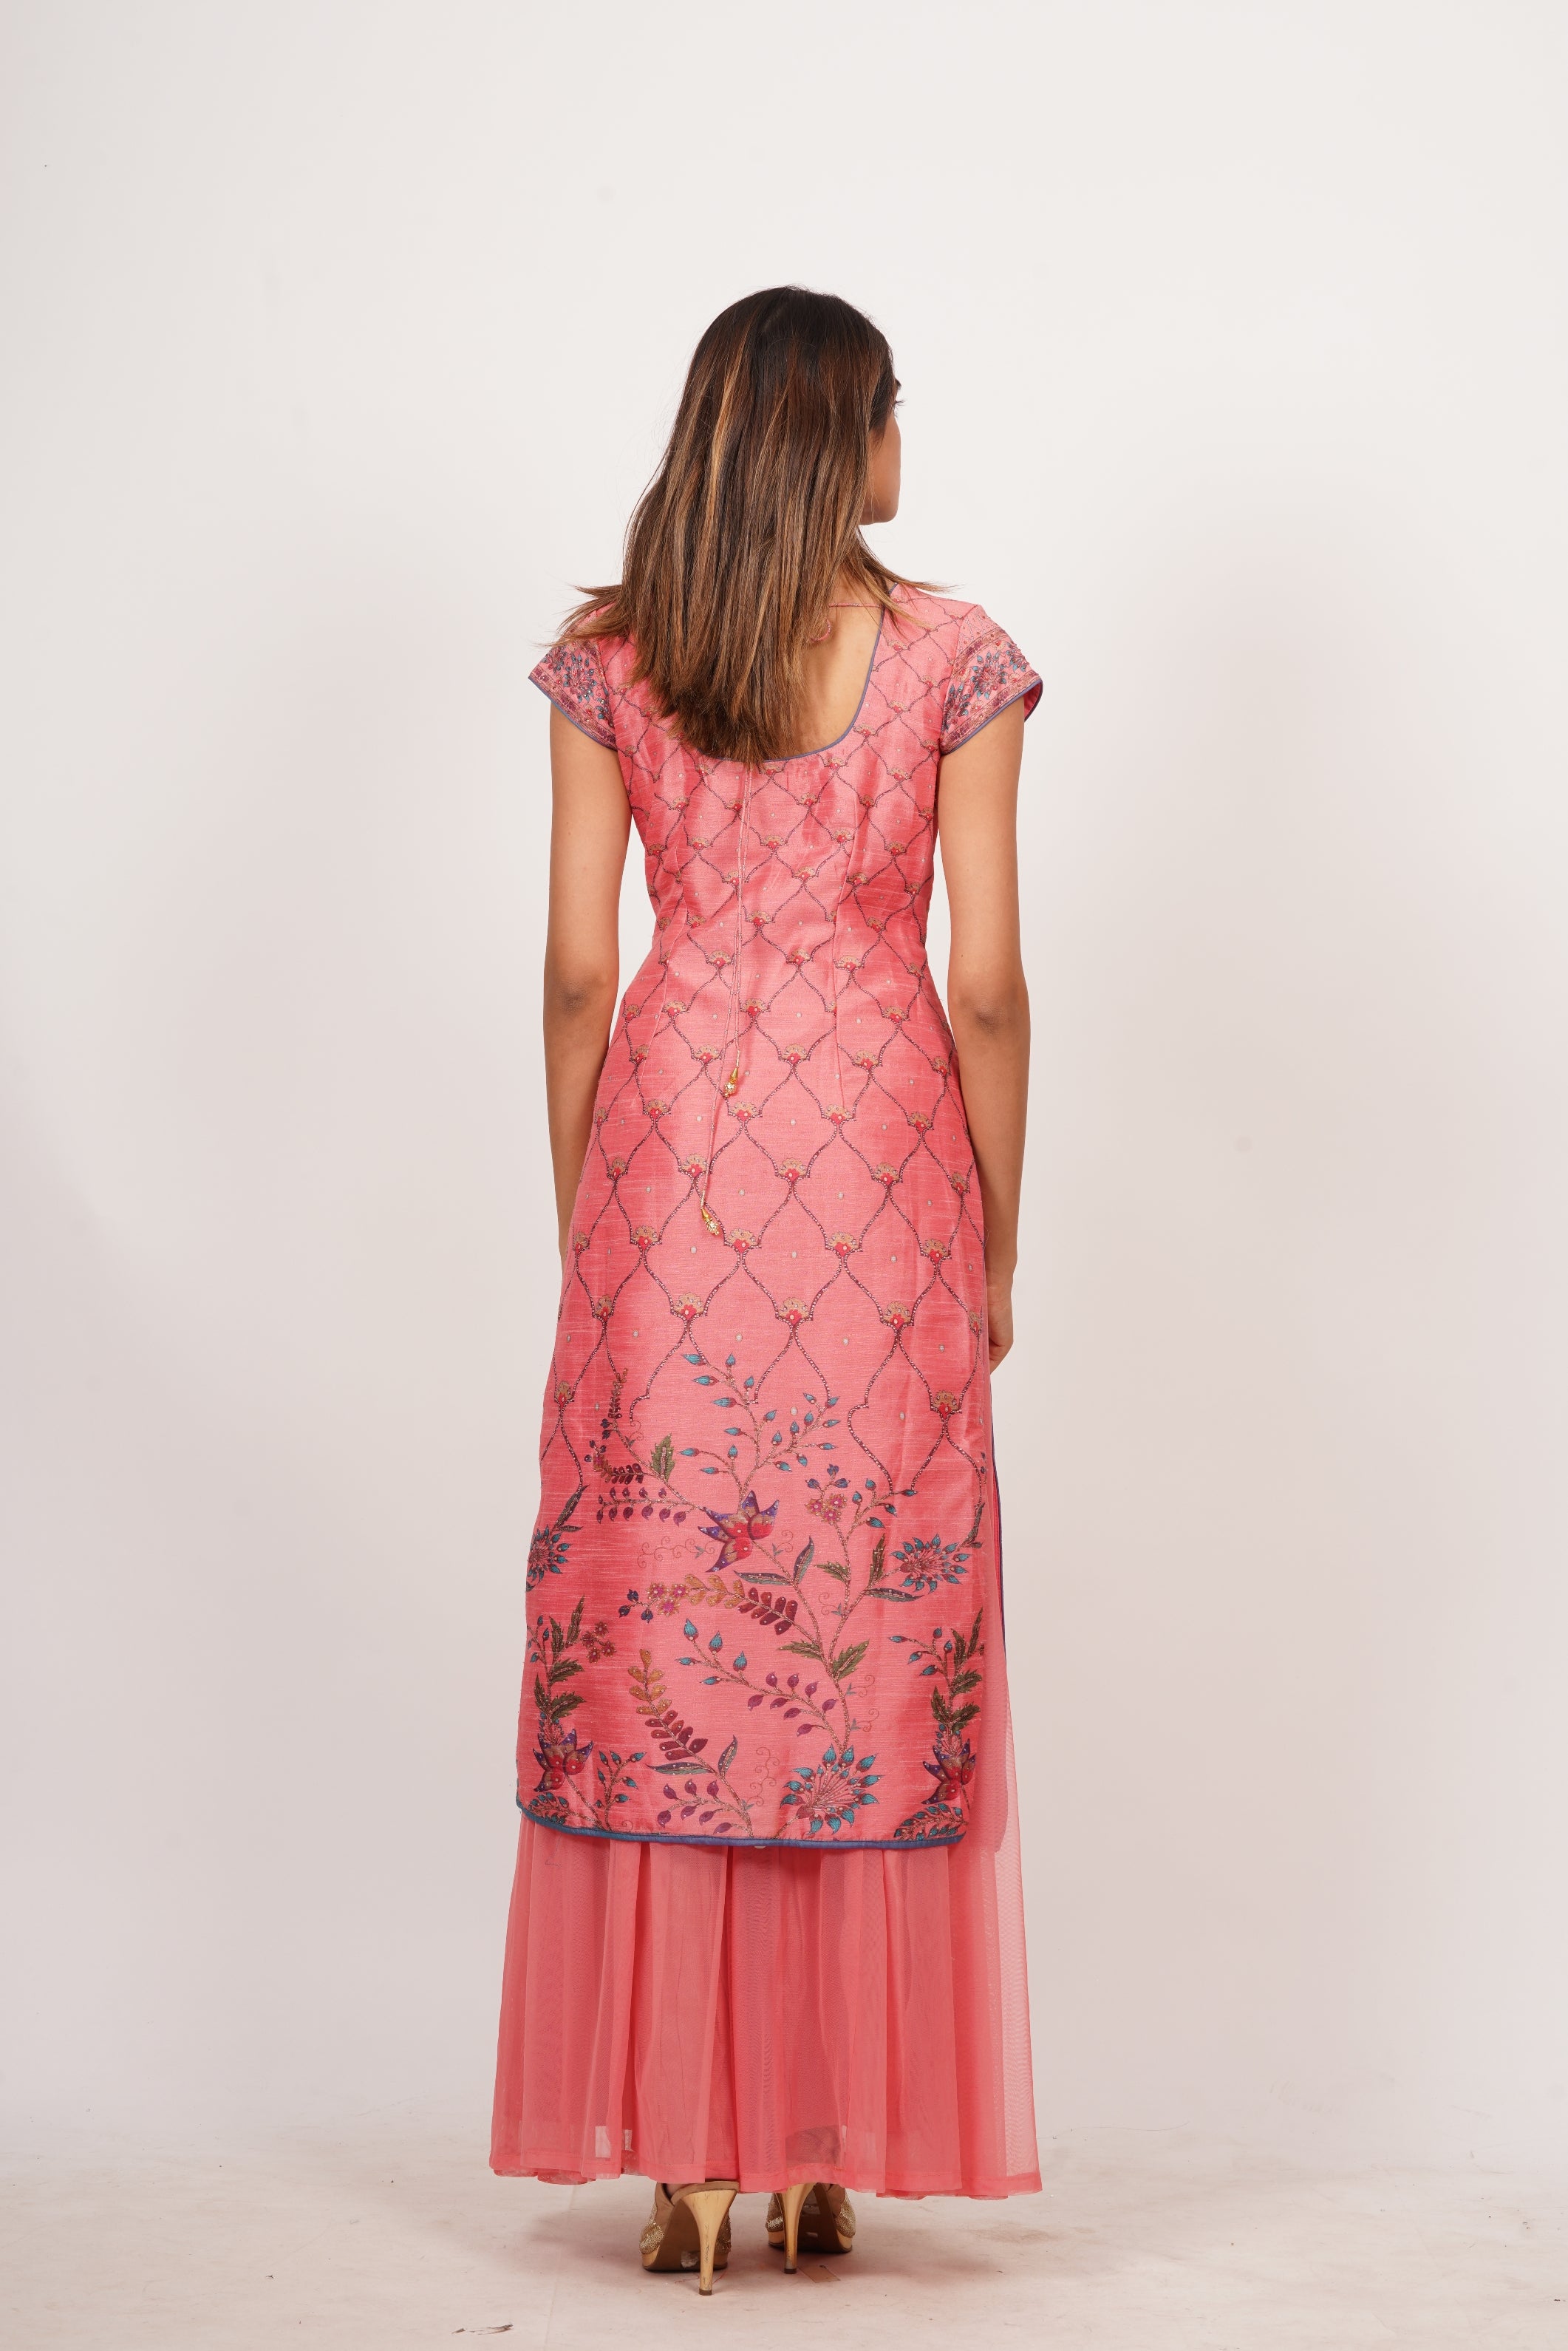 Pink Silk Printed Salwar Kameez - kaystore.in